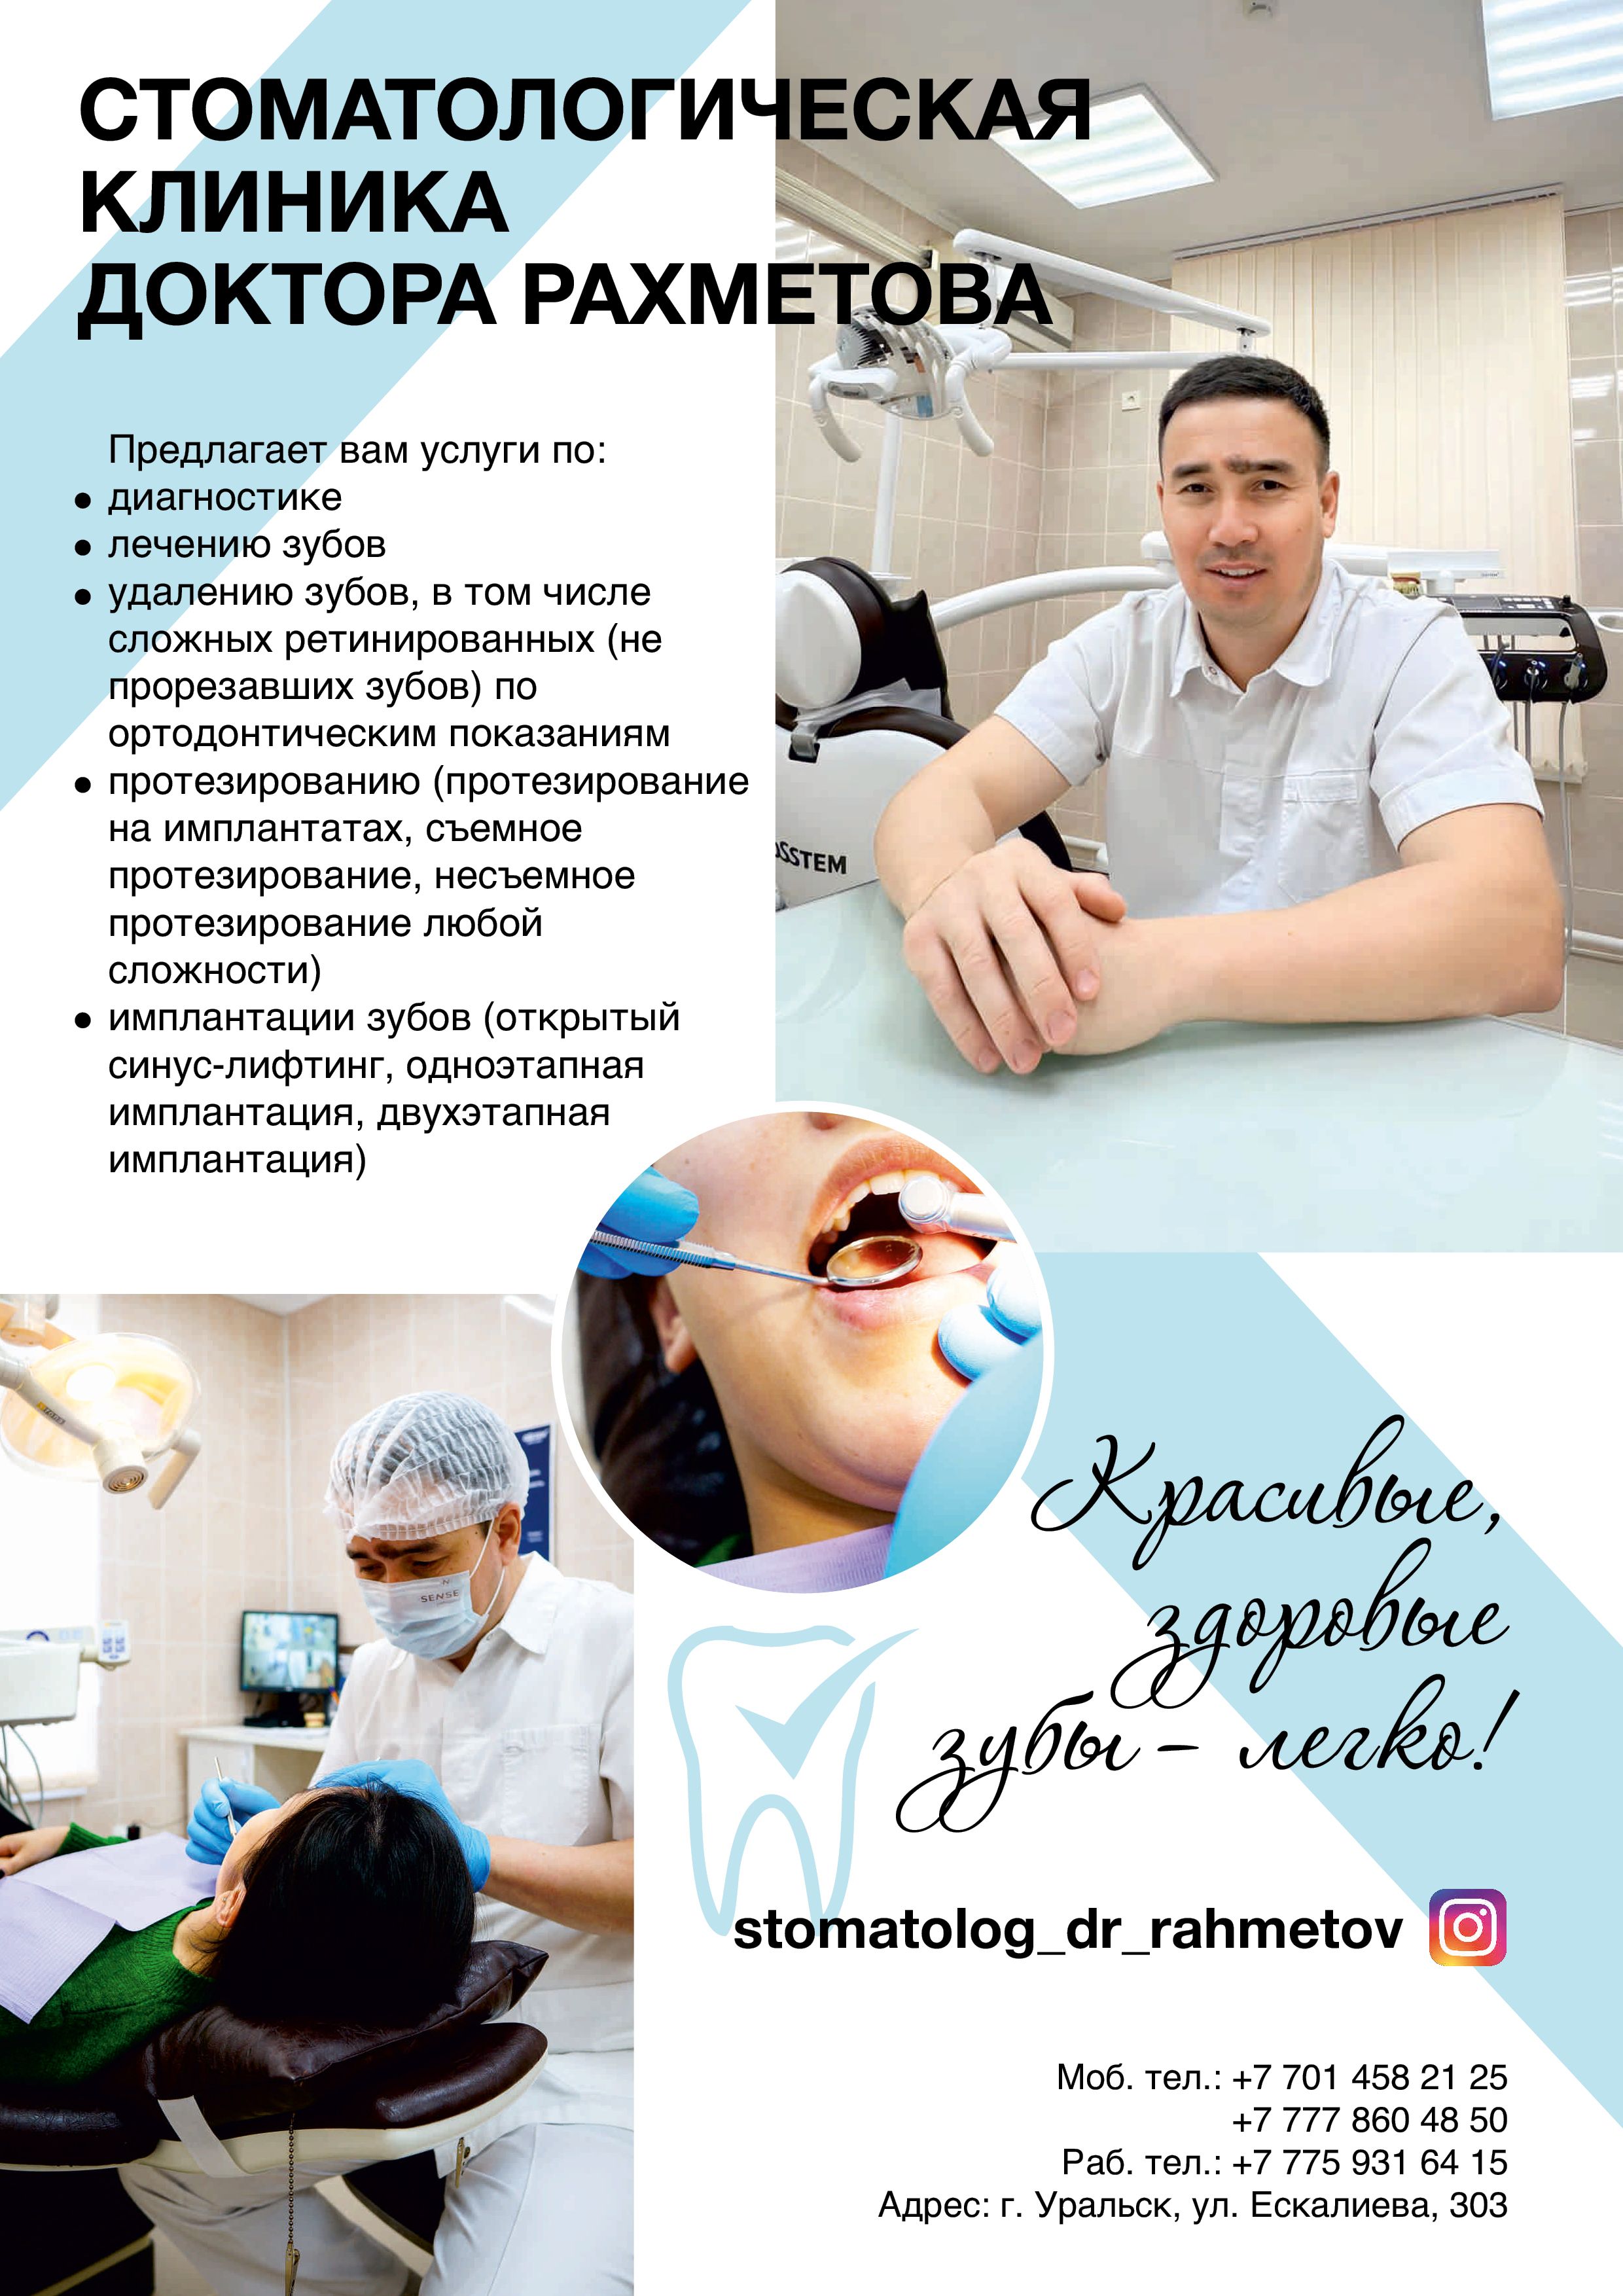 Стоматологическая клиника доктора Рахметова